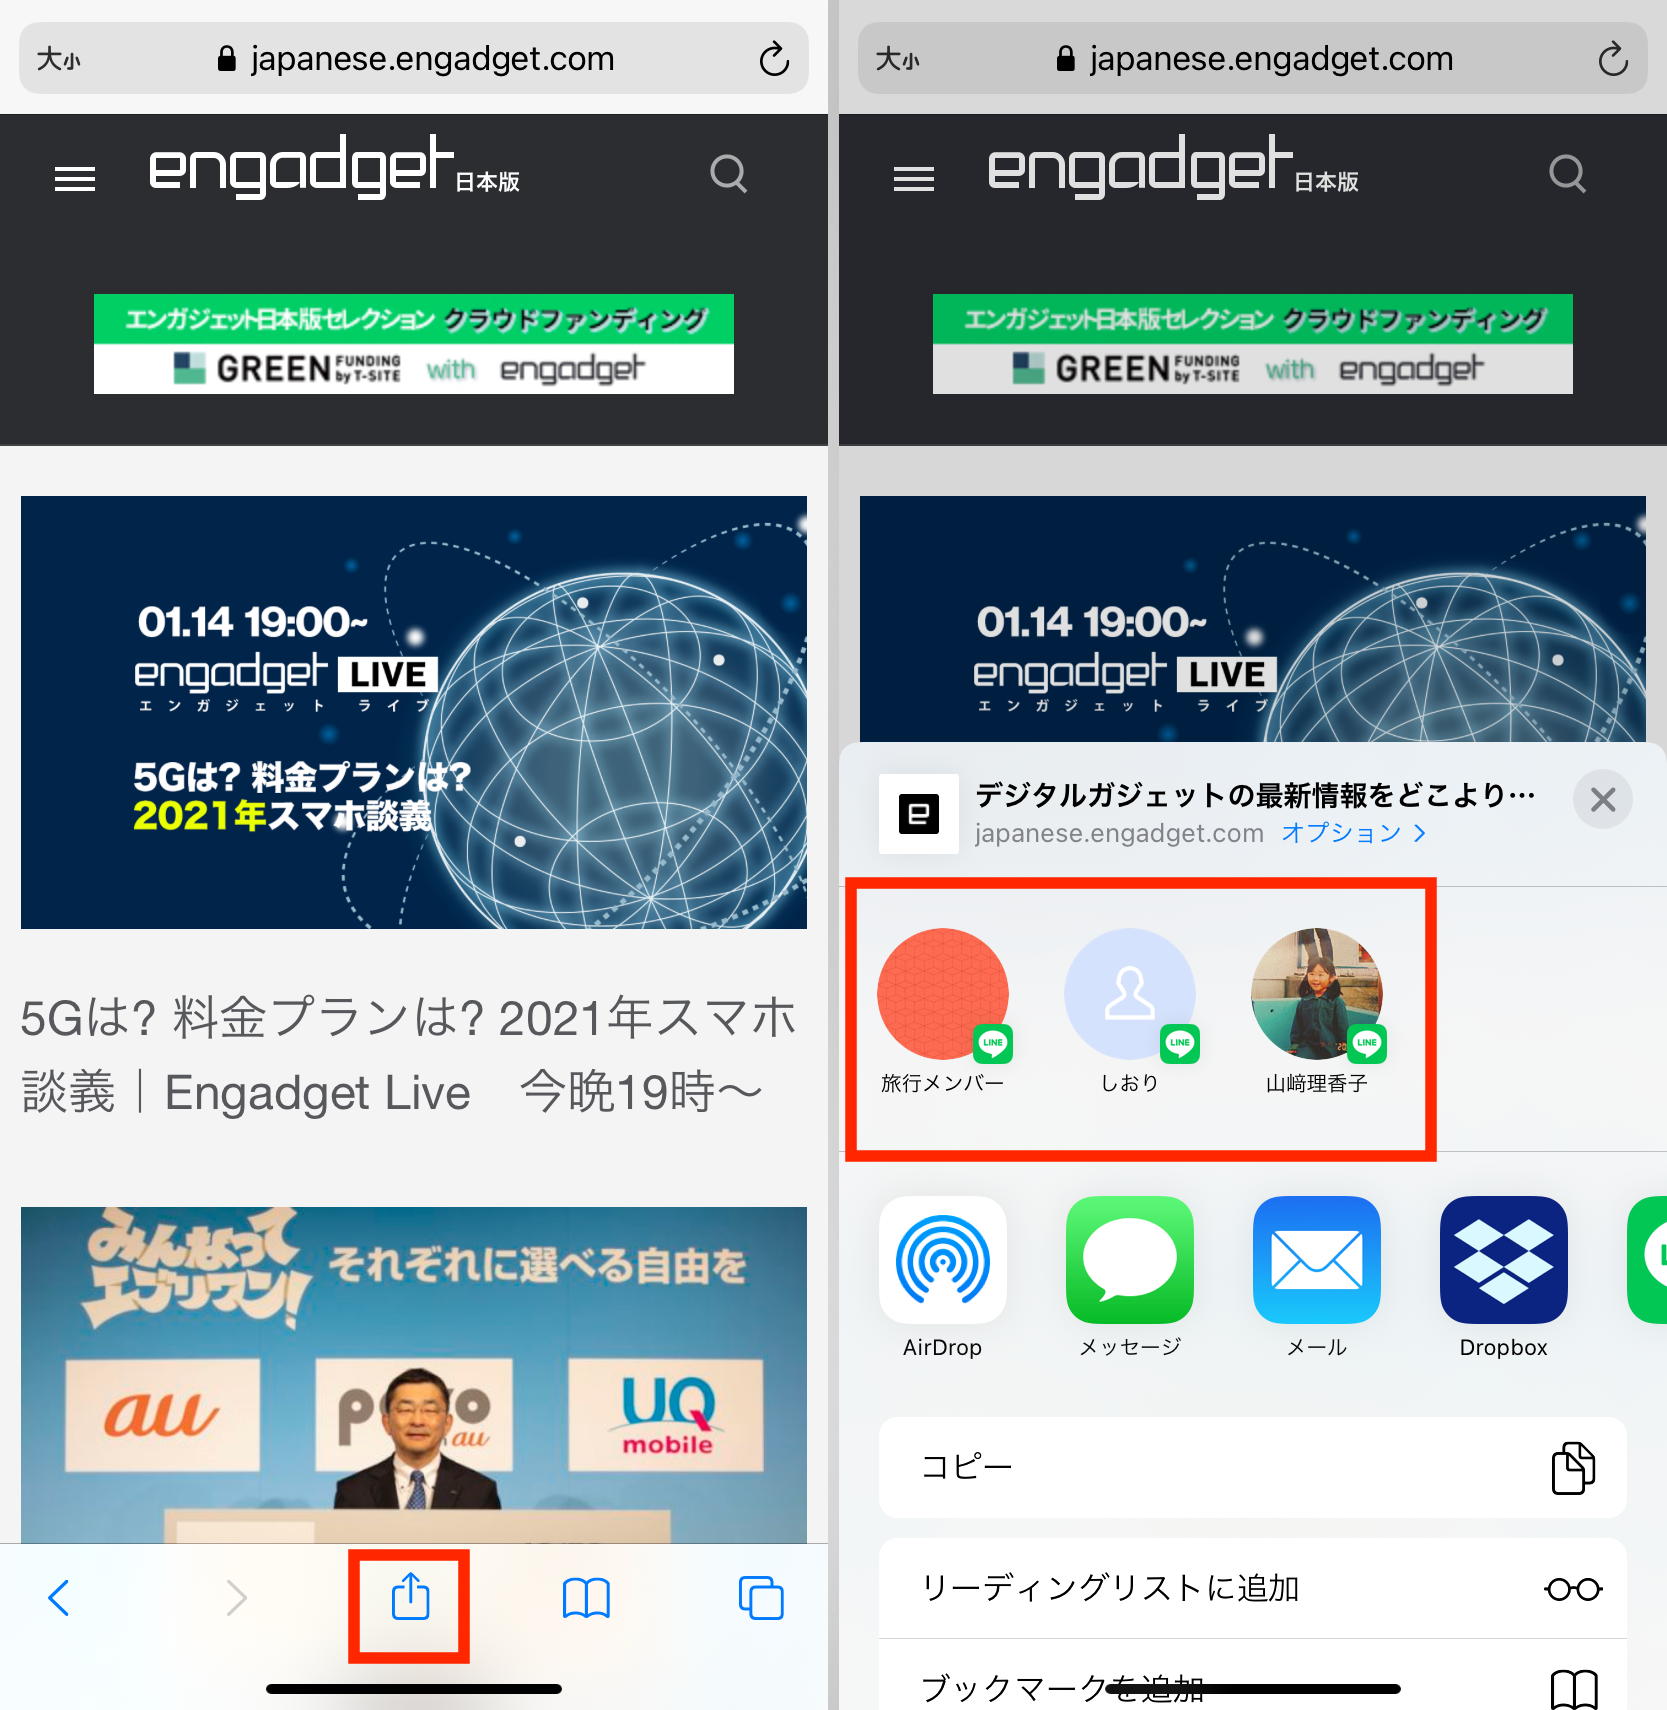 共有メニューの友だちのアイコンを削除 非表示にできるって知ってました Iphone Tips Engadget 日本版